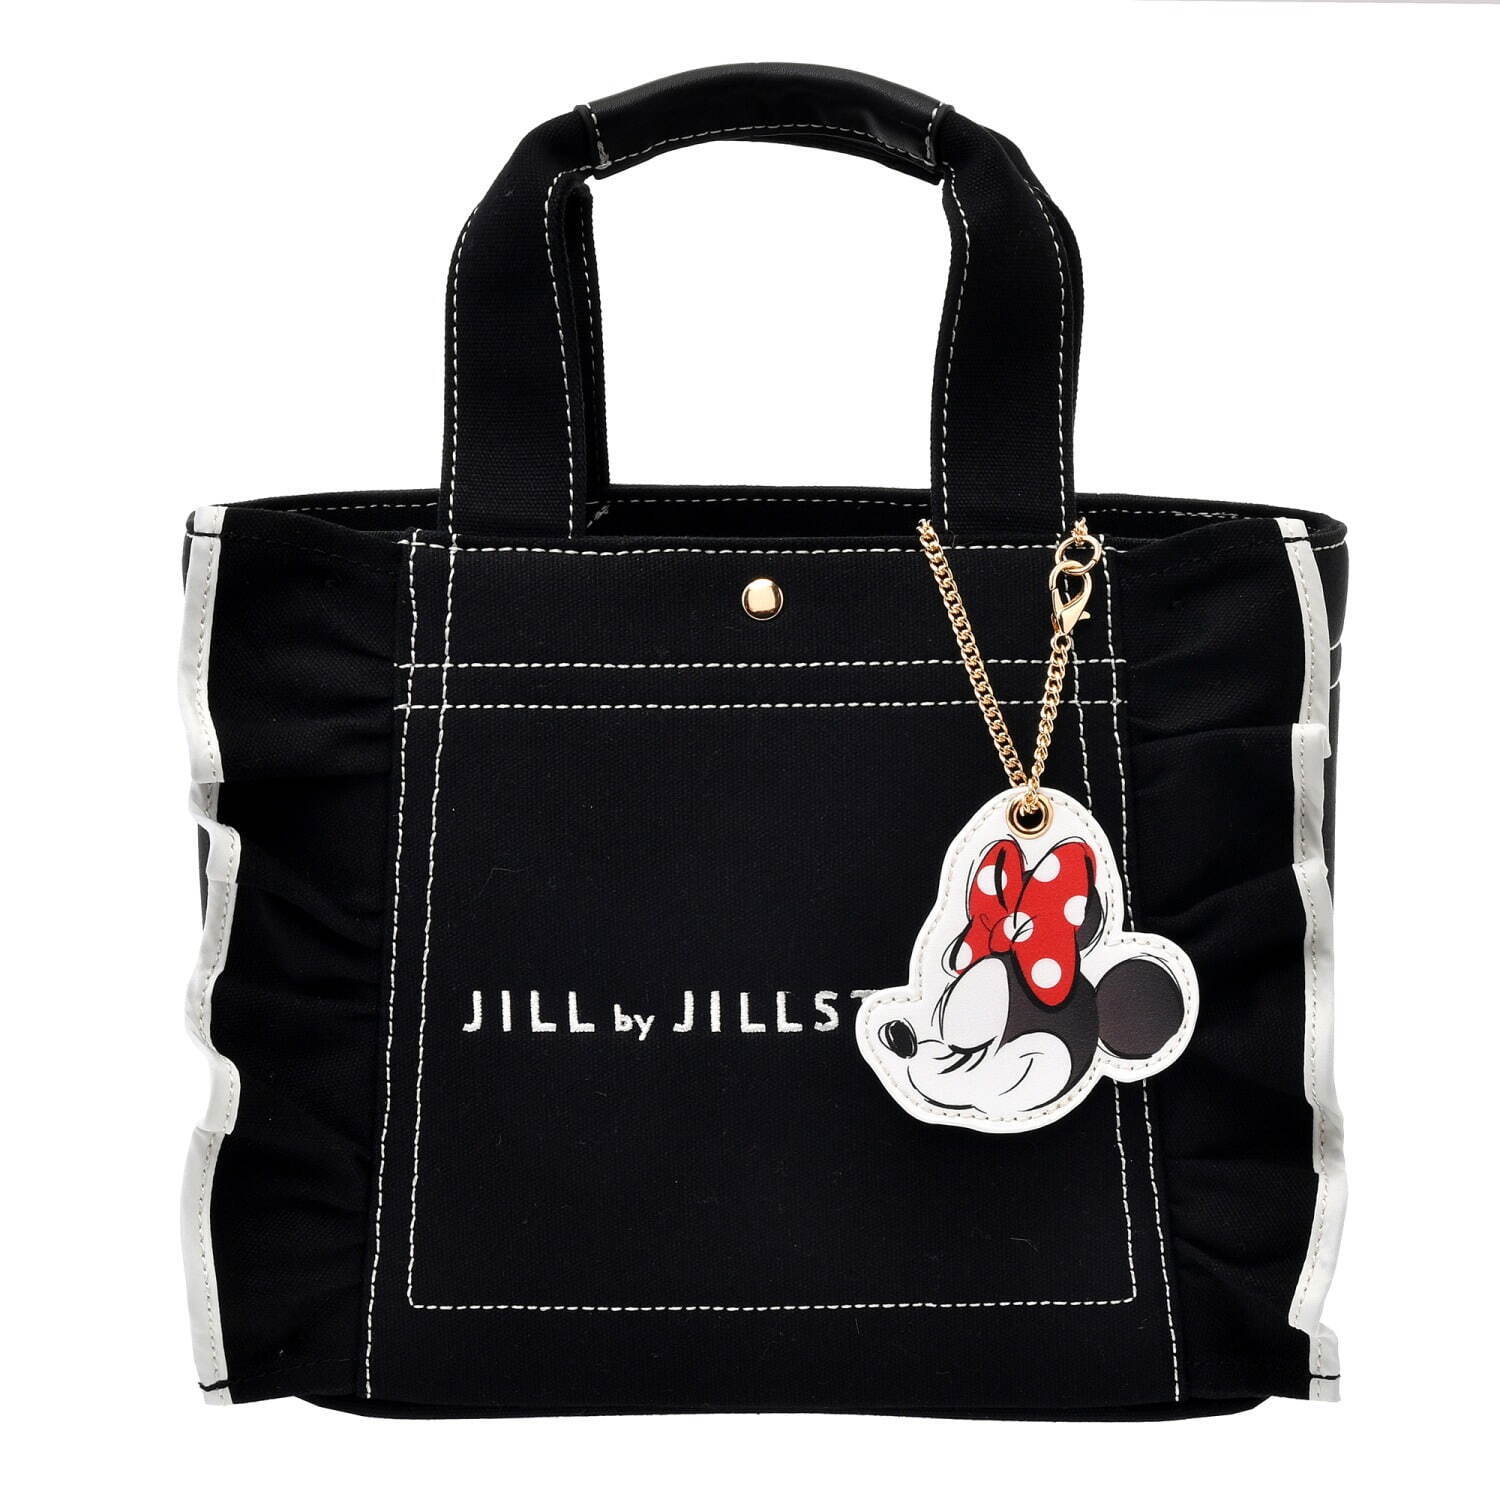 ジル by ジルスチュアート人気バッグが「ミニー」デザインに、リボン ...